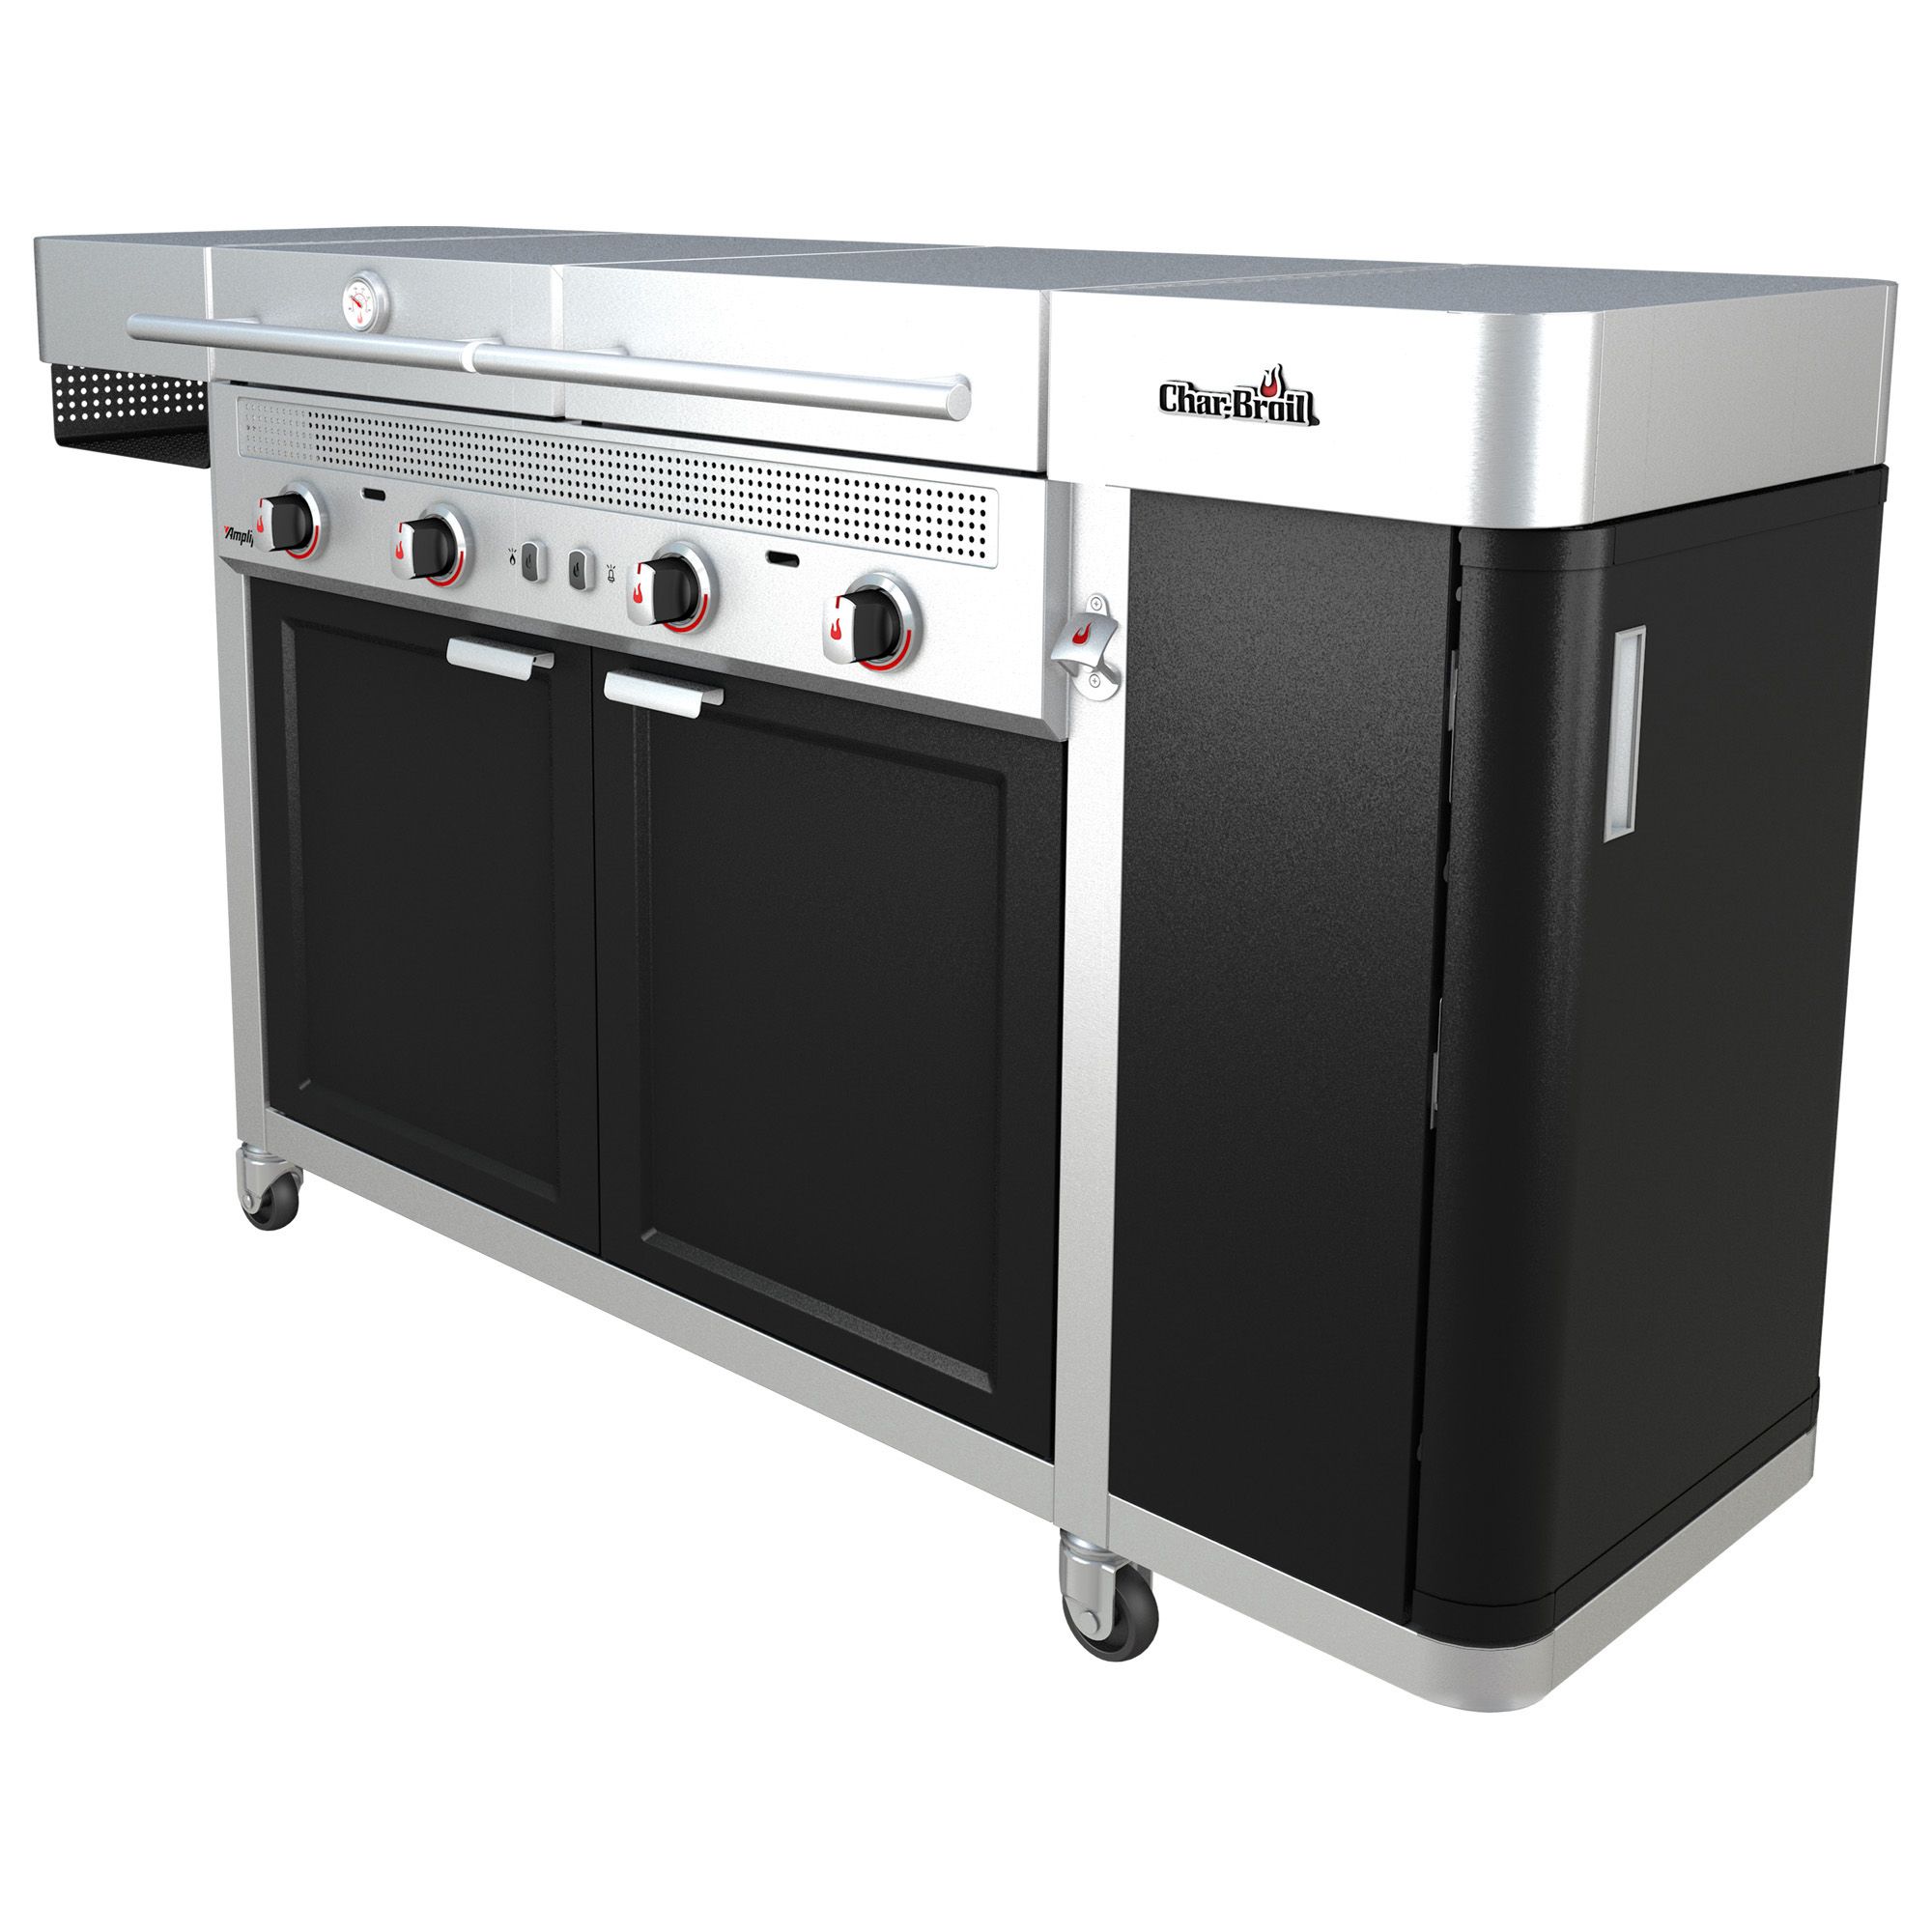 Char-Broil Medallion Series Vista GAS Powered 4 Burner Outdoor Kitchen